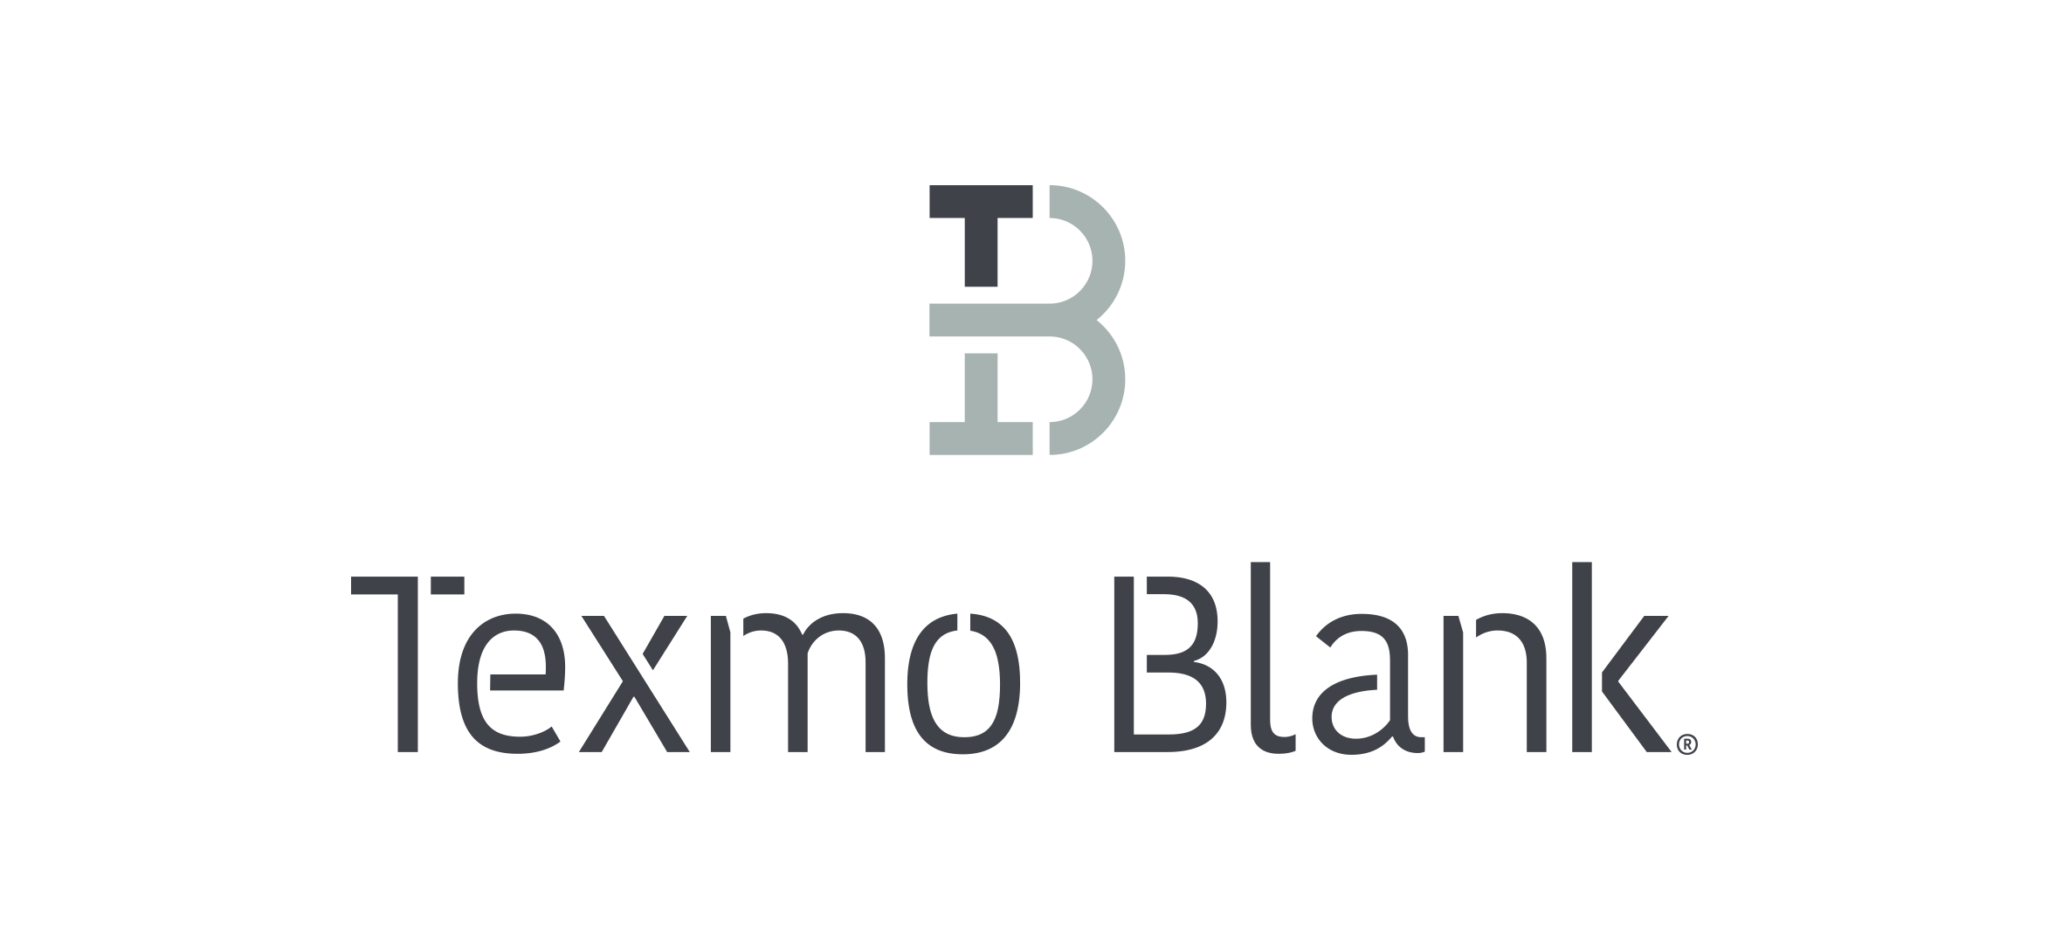 Texmo Blank stellt sich vor